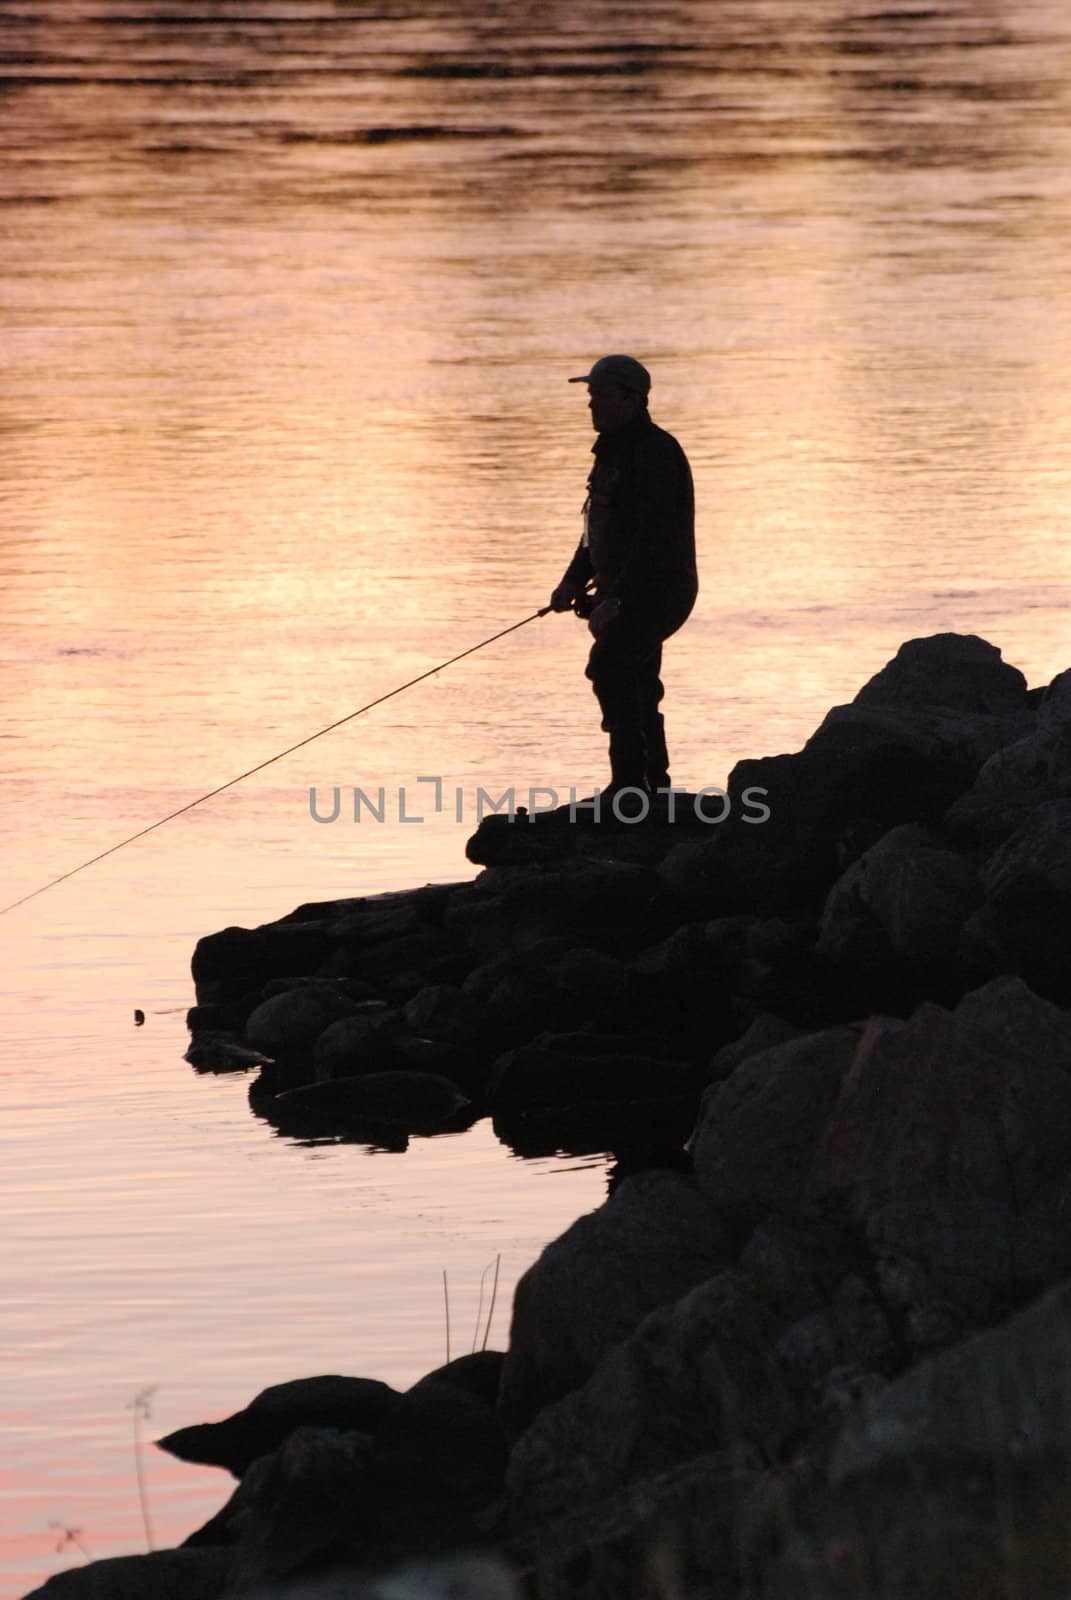 A fisherman by ljusnan69